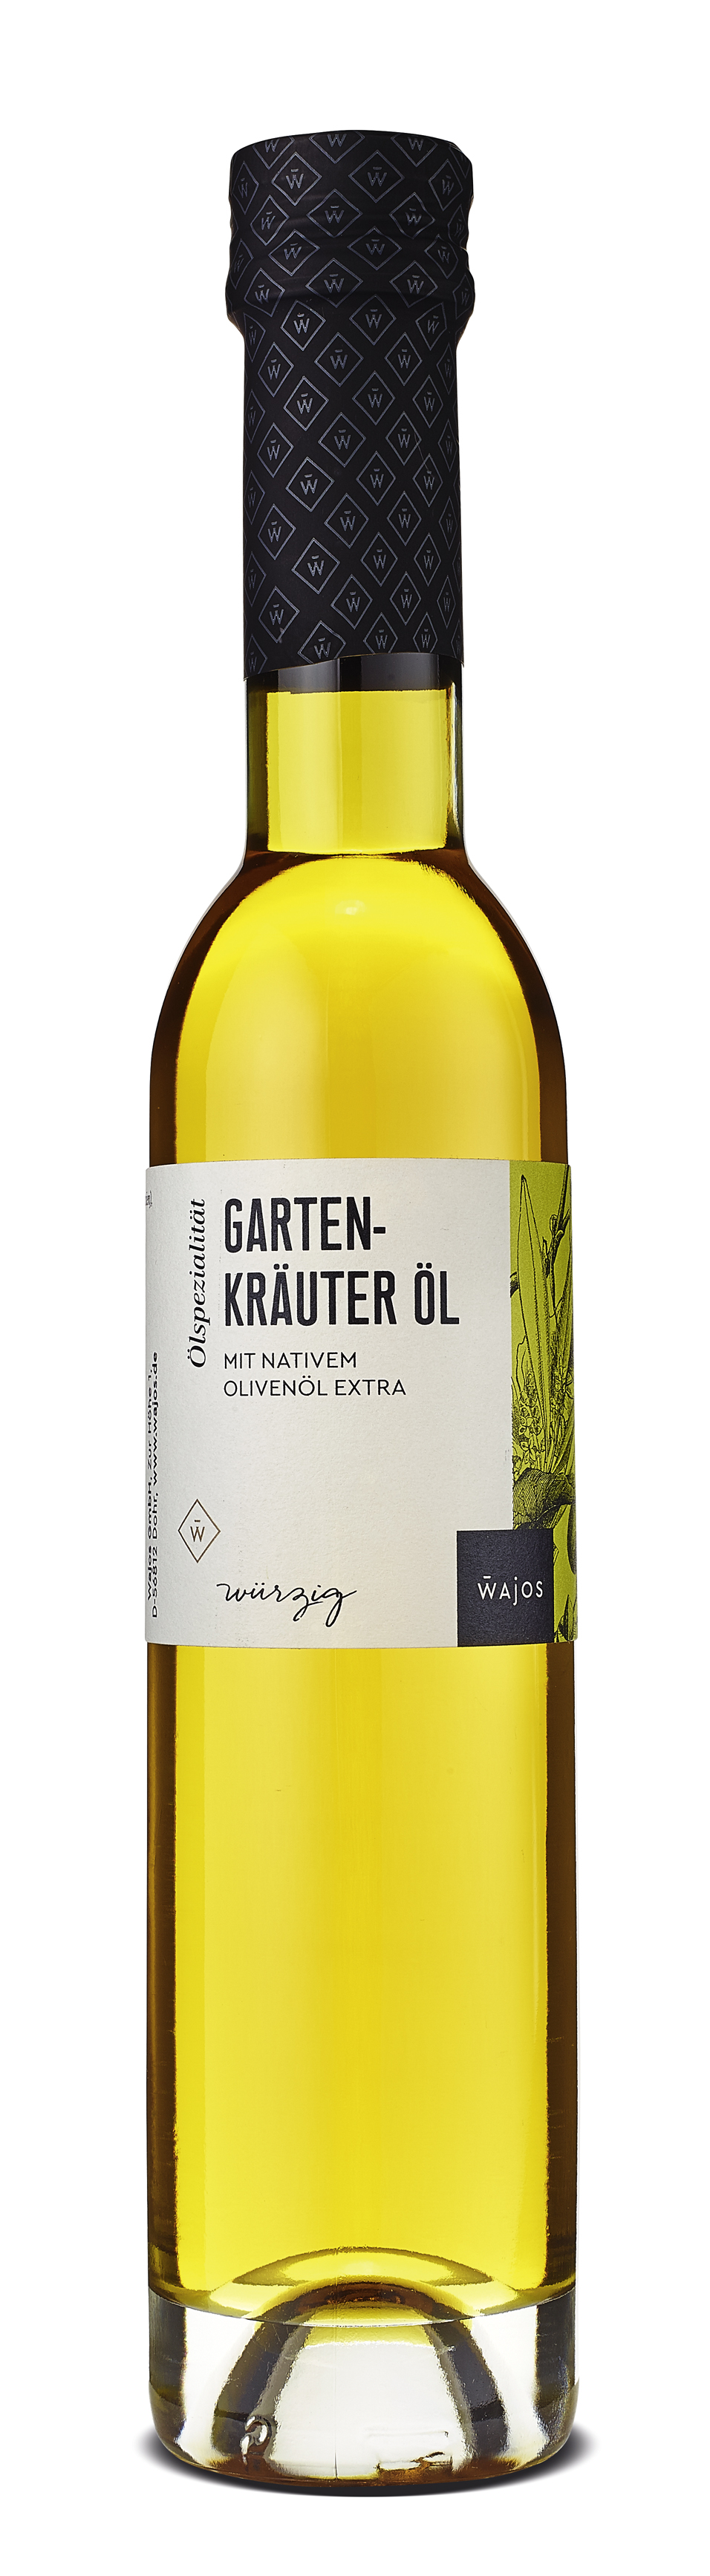 Gartenkäuter Öl 250ml, Olivenölzubereitung